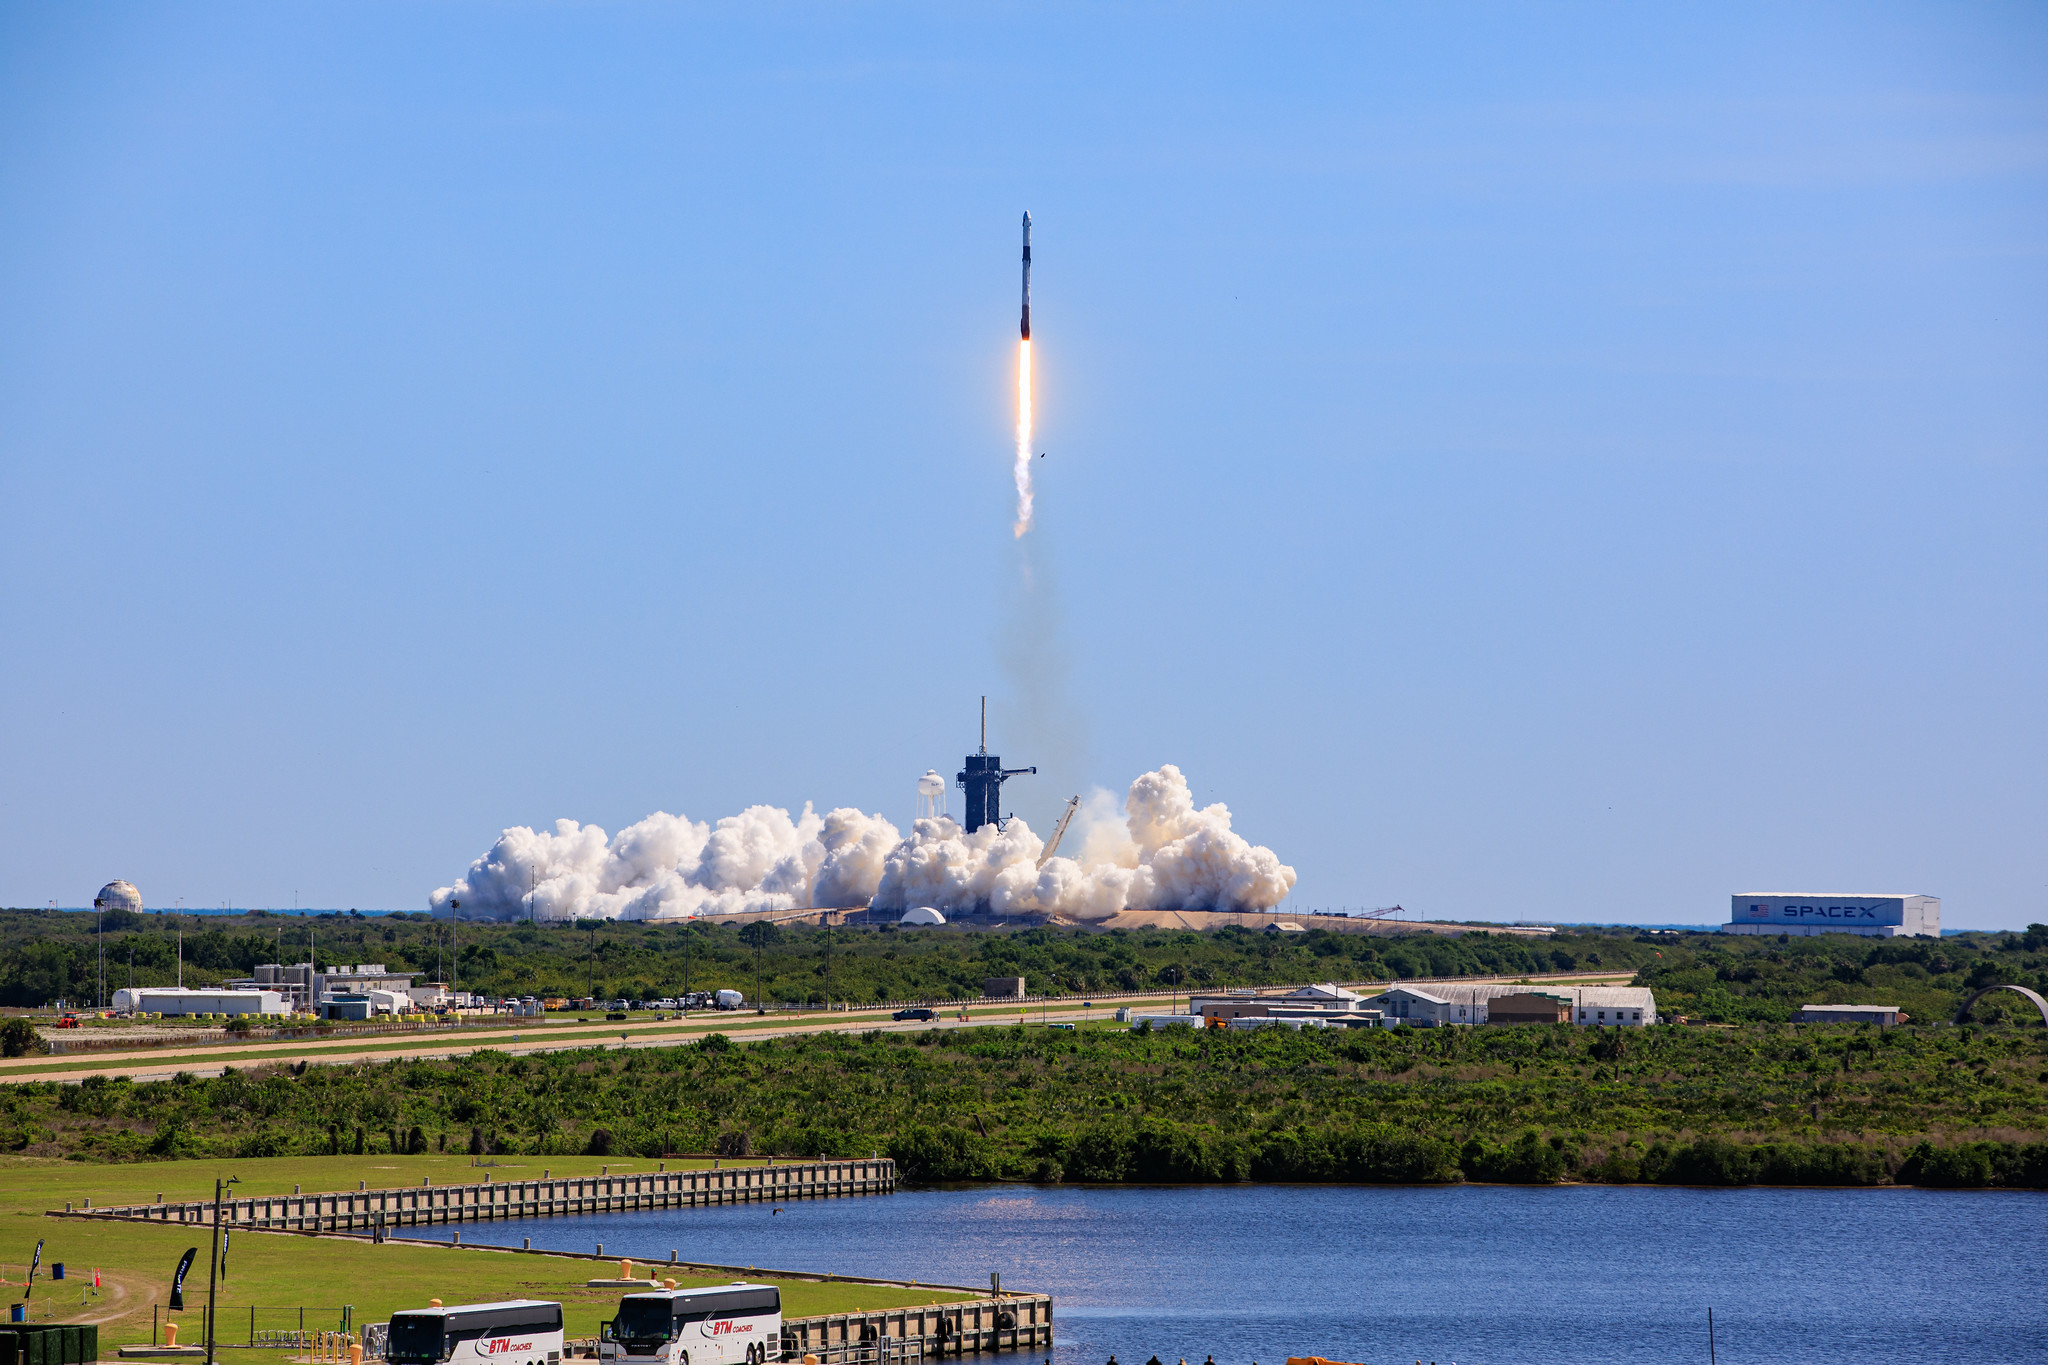 नासा का स्पेसएक्स क्रू -5 मिशन बुधवार, 5 अक्टूबर को फ्लोरिडा में एजेंसी के कैनेडी स्पेस सेंटर से अंतर्राष्ट्रीय अंतरिक्ष स्टेशन को लॉन्च करने का लक्ष्य बना रहा है। स्पेसएक्स फाल्कन 9 रॉकेट और ड्रैगन अंतरिक्ष यान नासा के अंतरिक्ष यात्रियों निकोल मान और जोश कसाडा को JAXA (जापान एयरोस्पेस एक्सप्लोरेशन एजेंसी) के अंतरिक्ष यात्री कोइची वाकाटा और रोस्कोस्मोस कॉस्मोनॉट अन्ना किकिना के साथ एक विज्ञान अभियान मिशन के लिए कक्षीय परिसर में ले जाएगा।